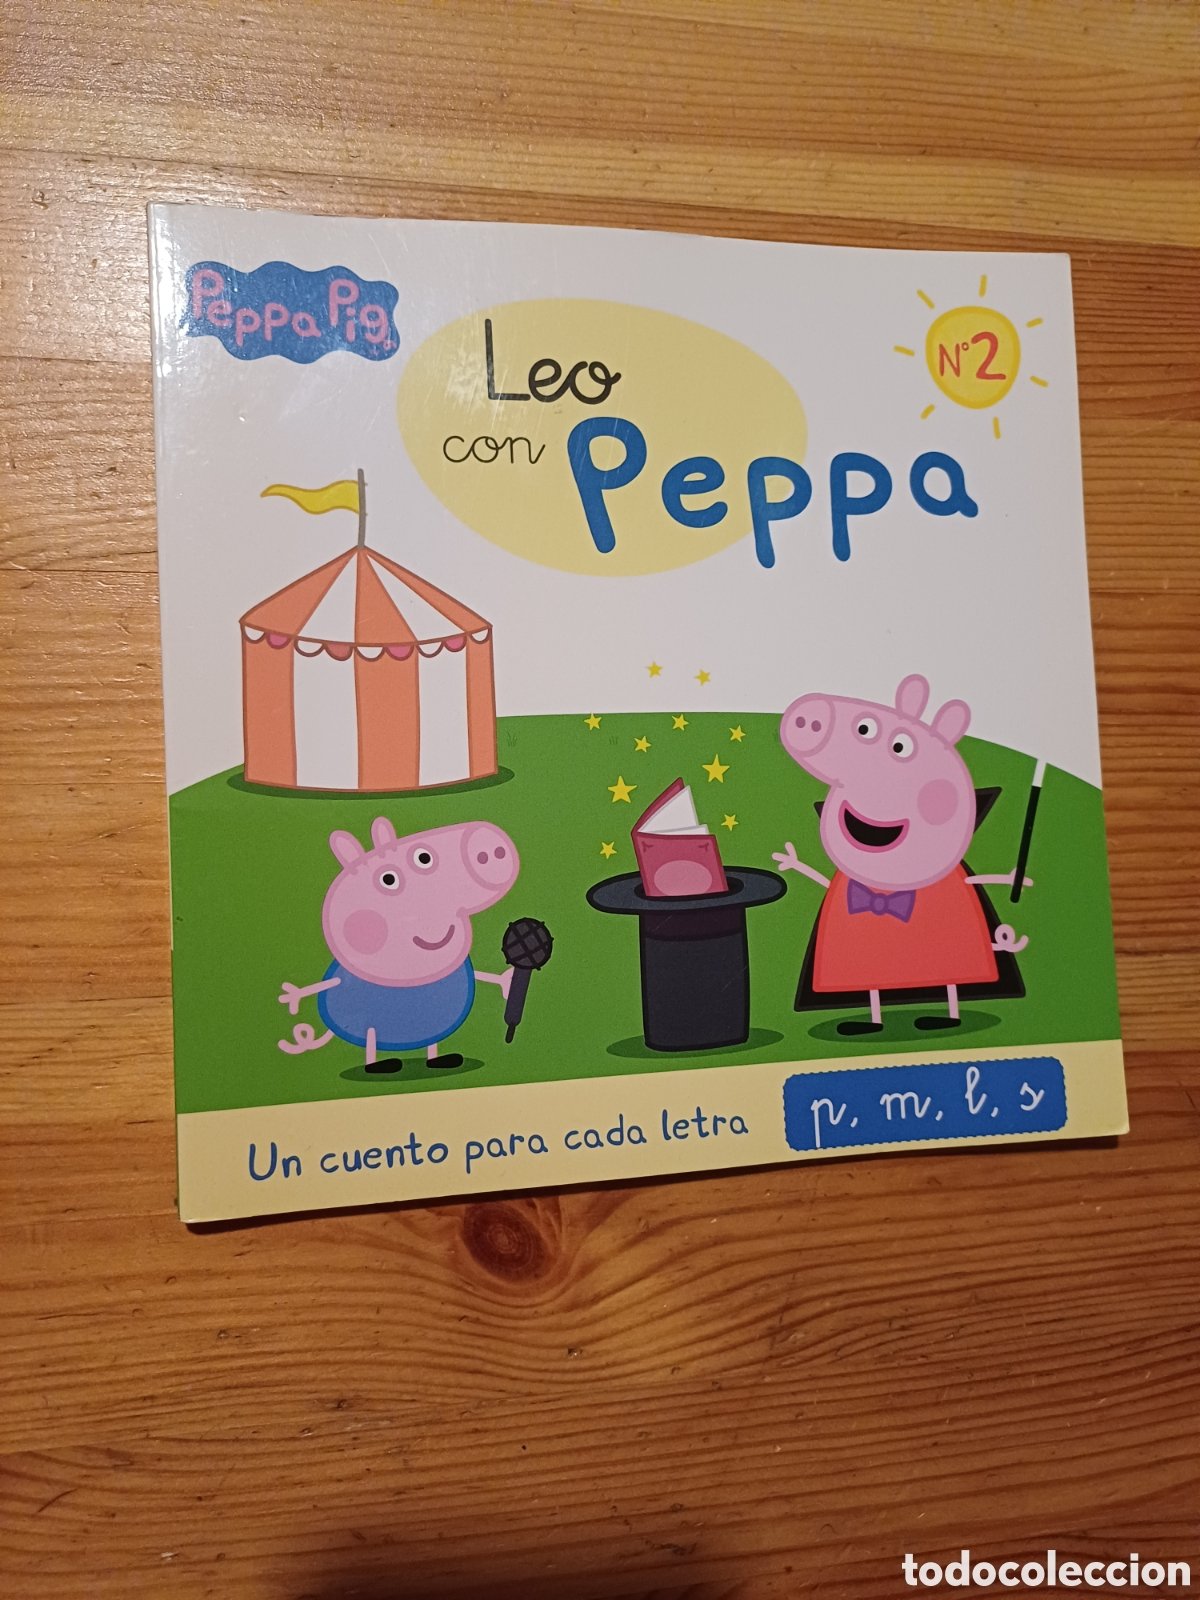 Libro Leo con Peppa Un cuento para cada letra de segunda mano por